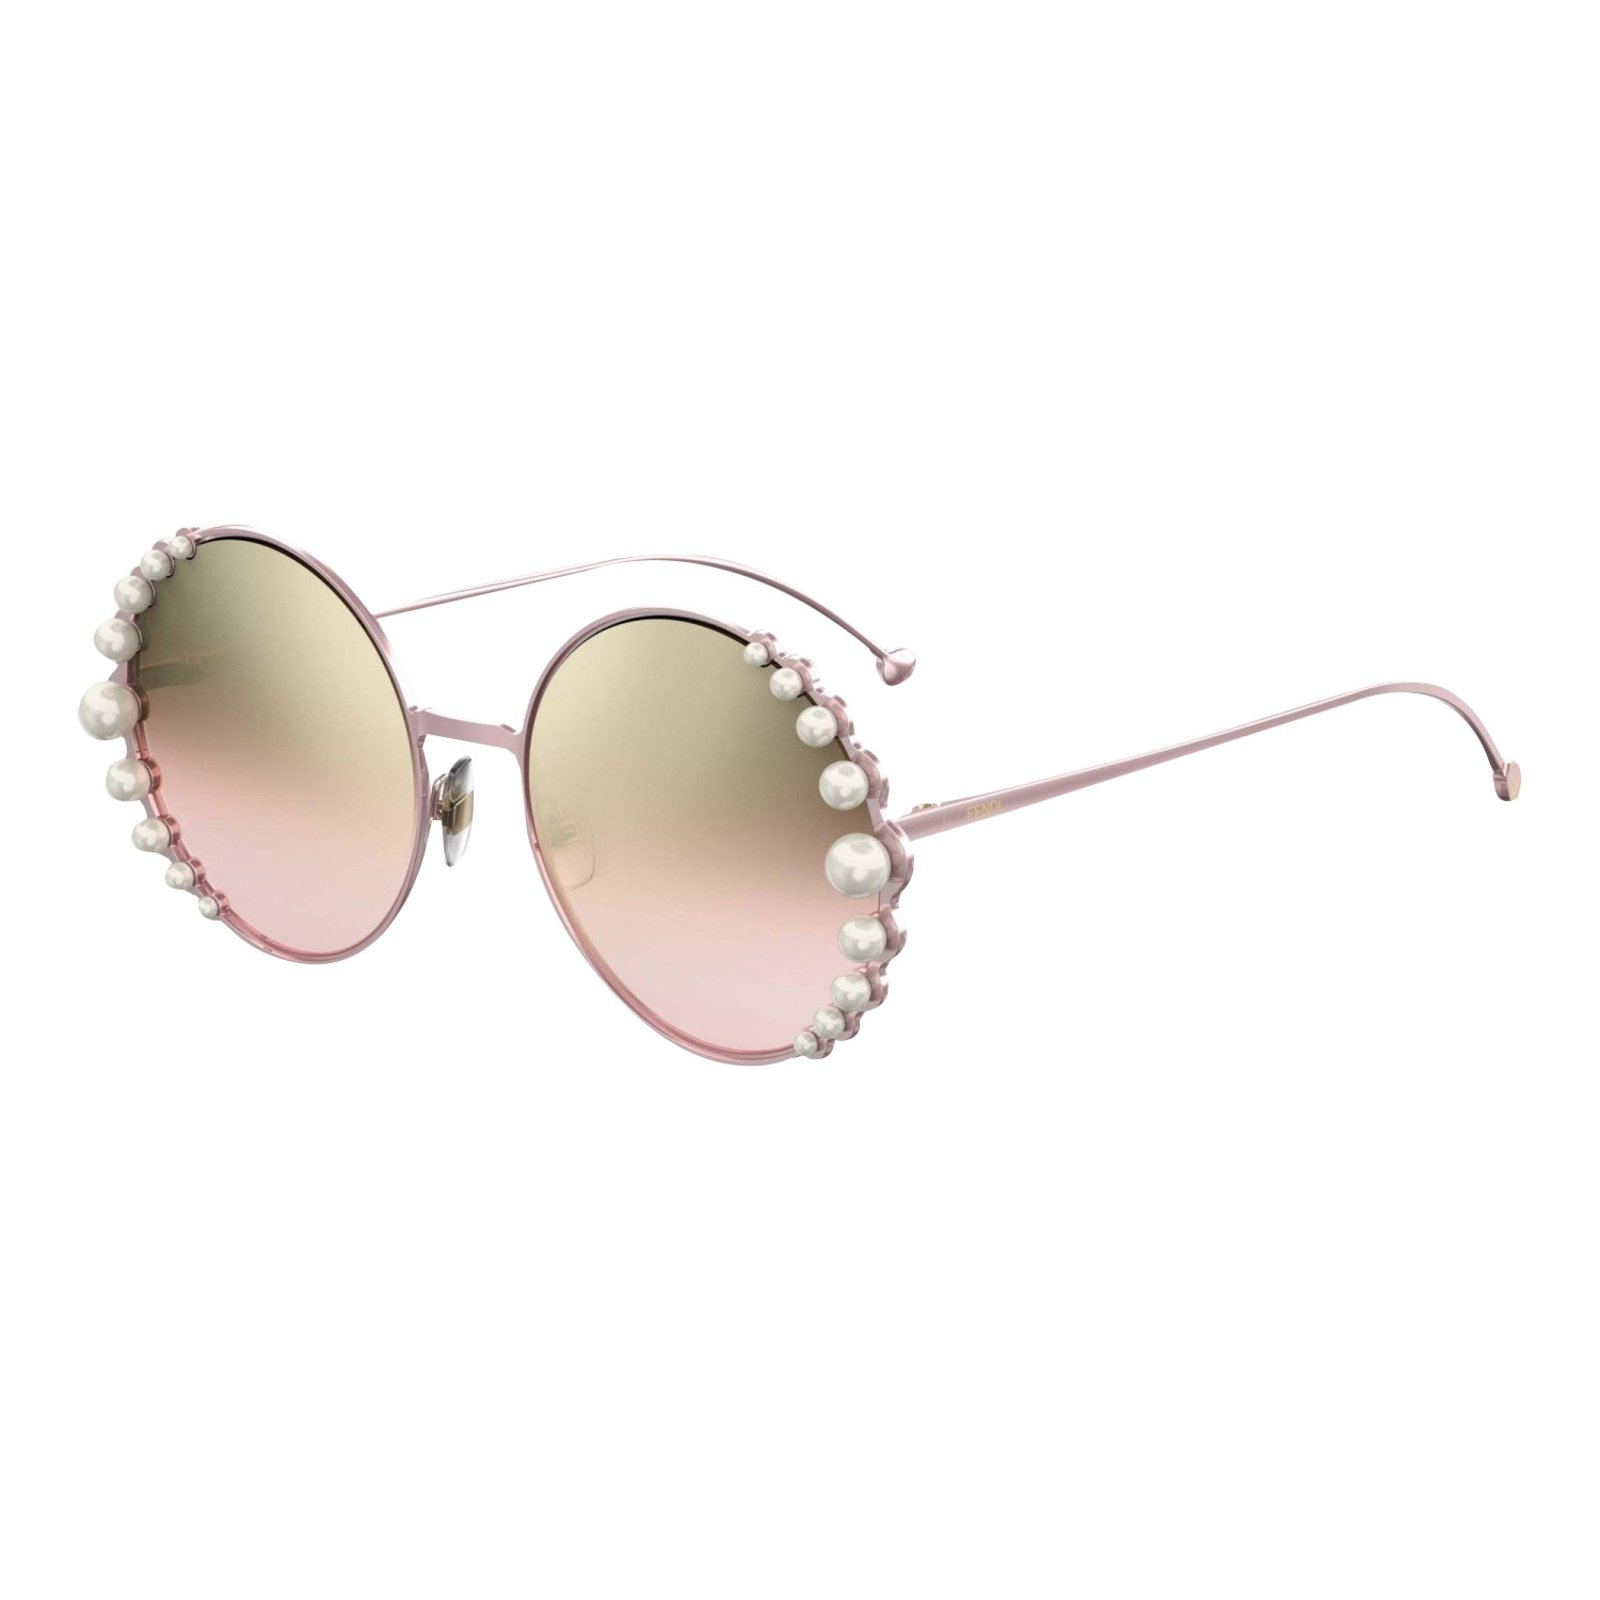 fendi sunglasses pearls